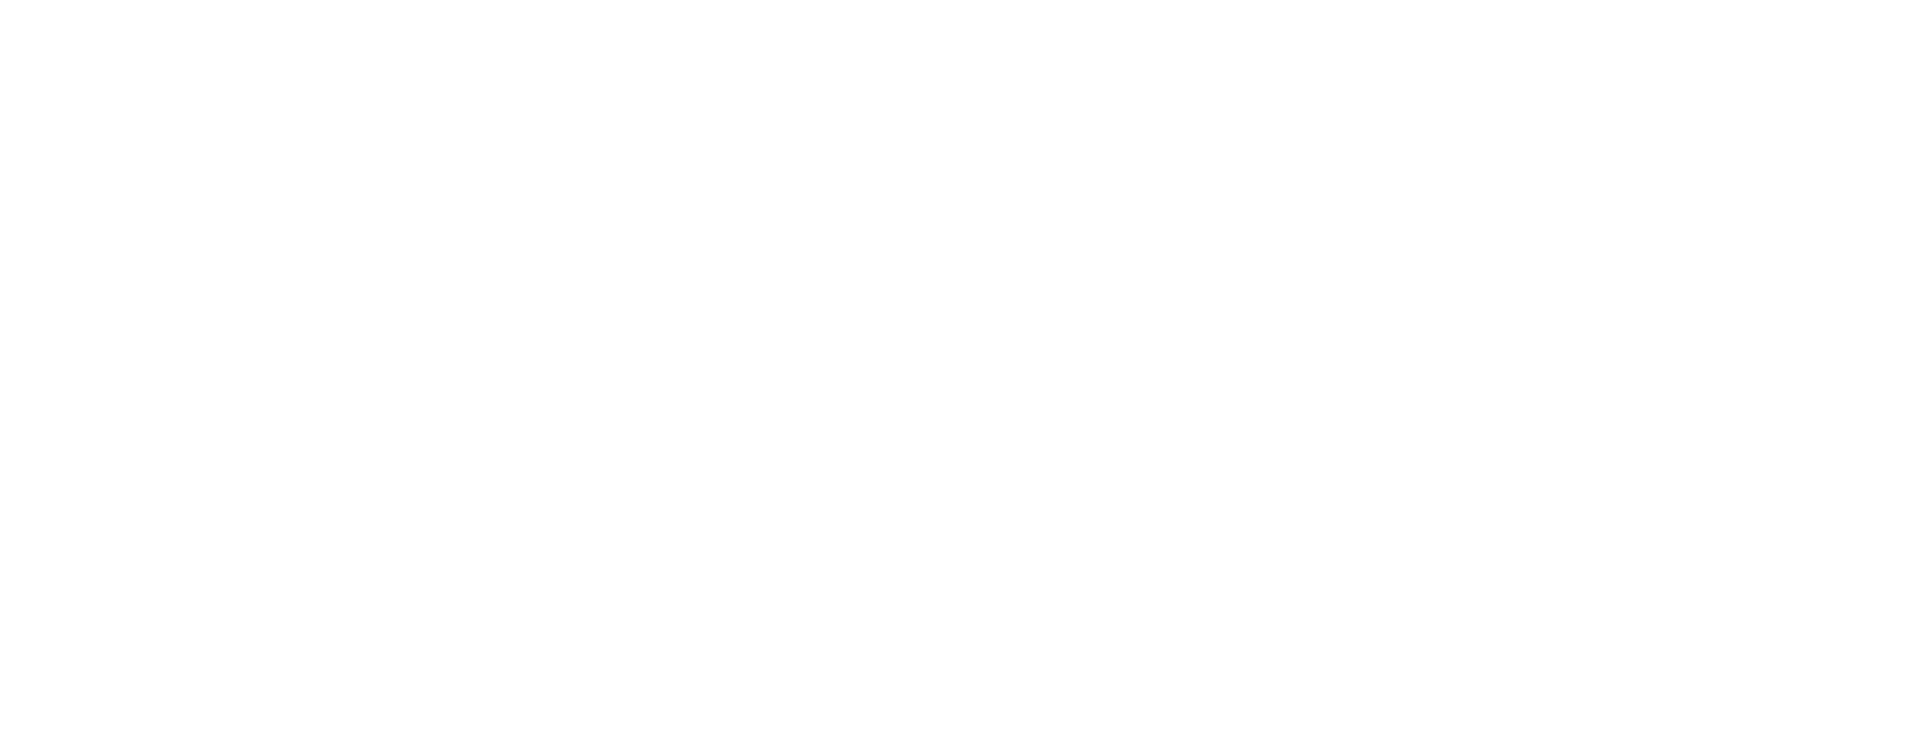 Foley Company